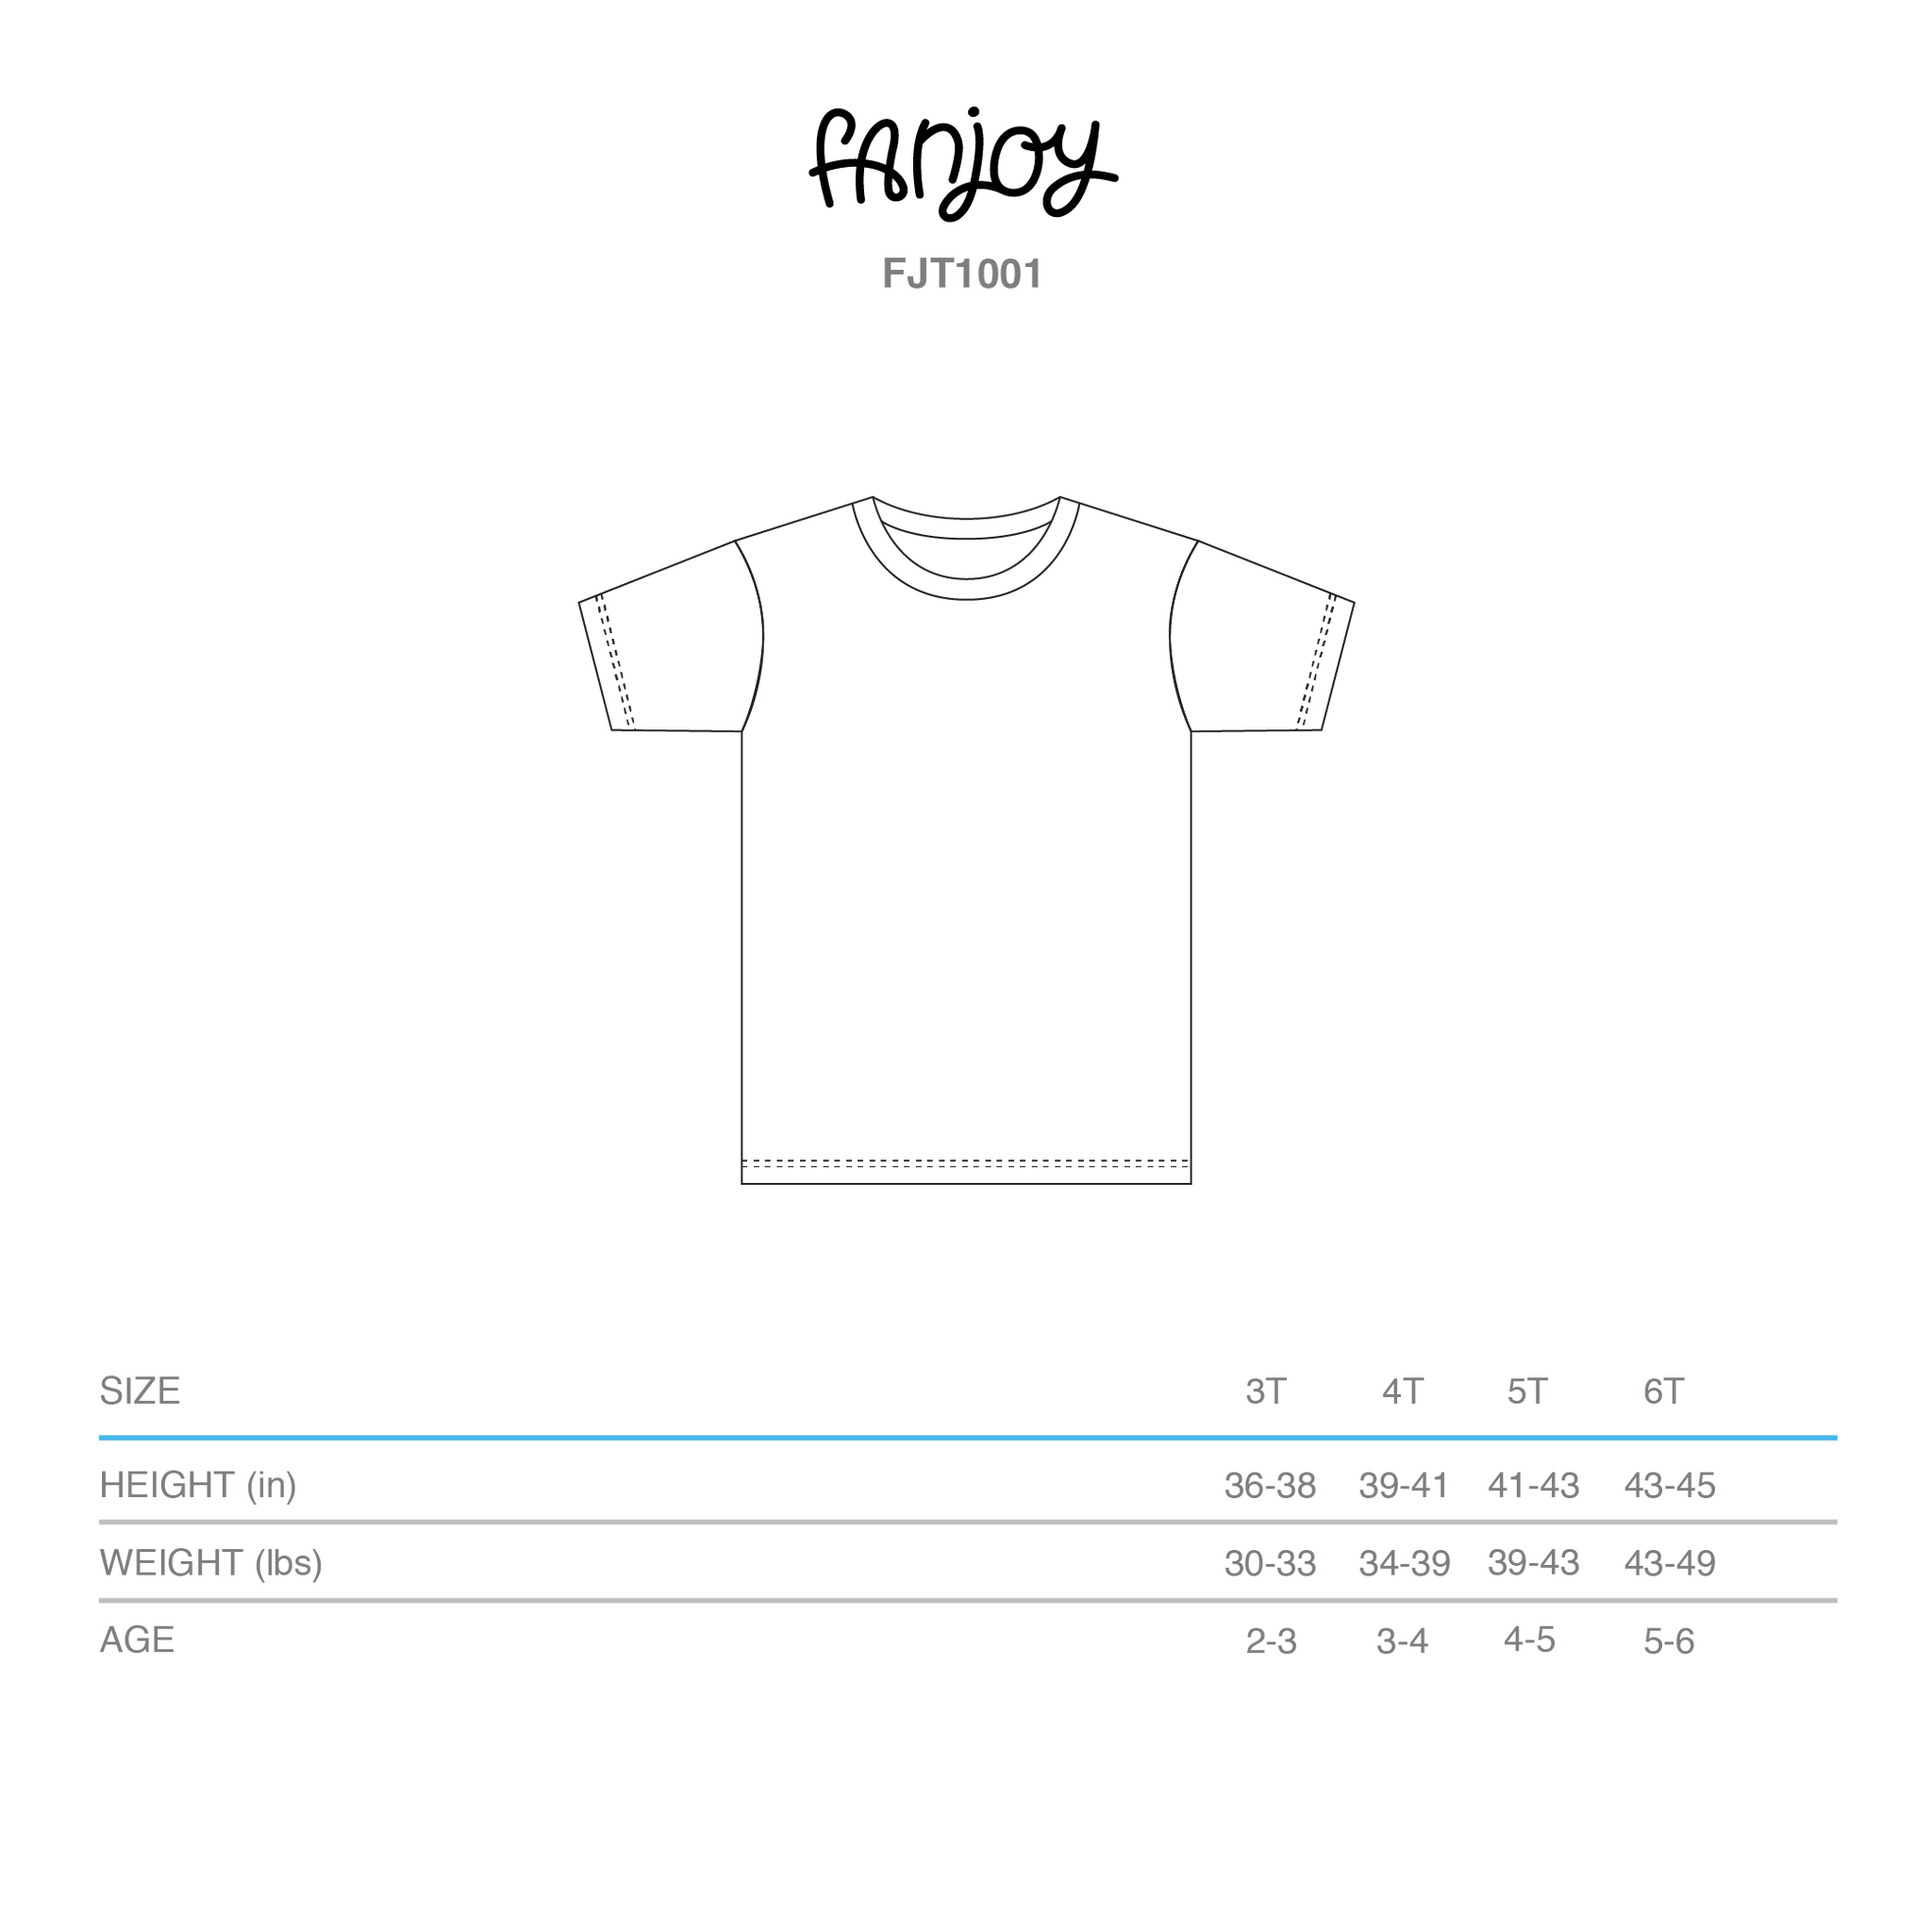 World Shirt Size Chart